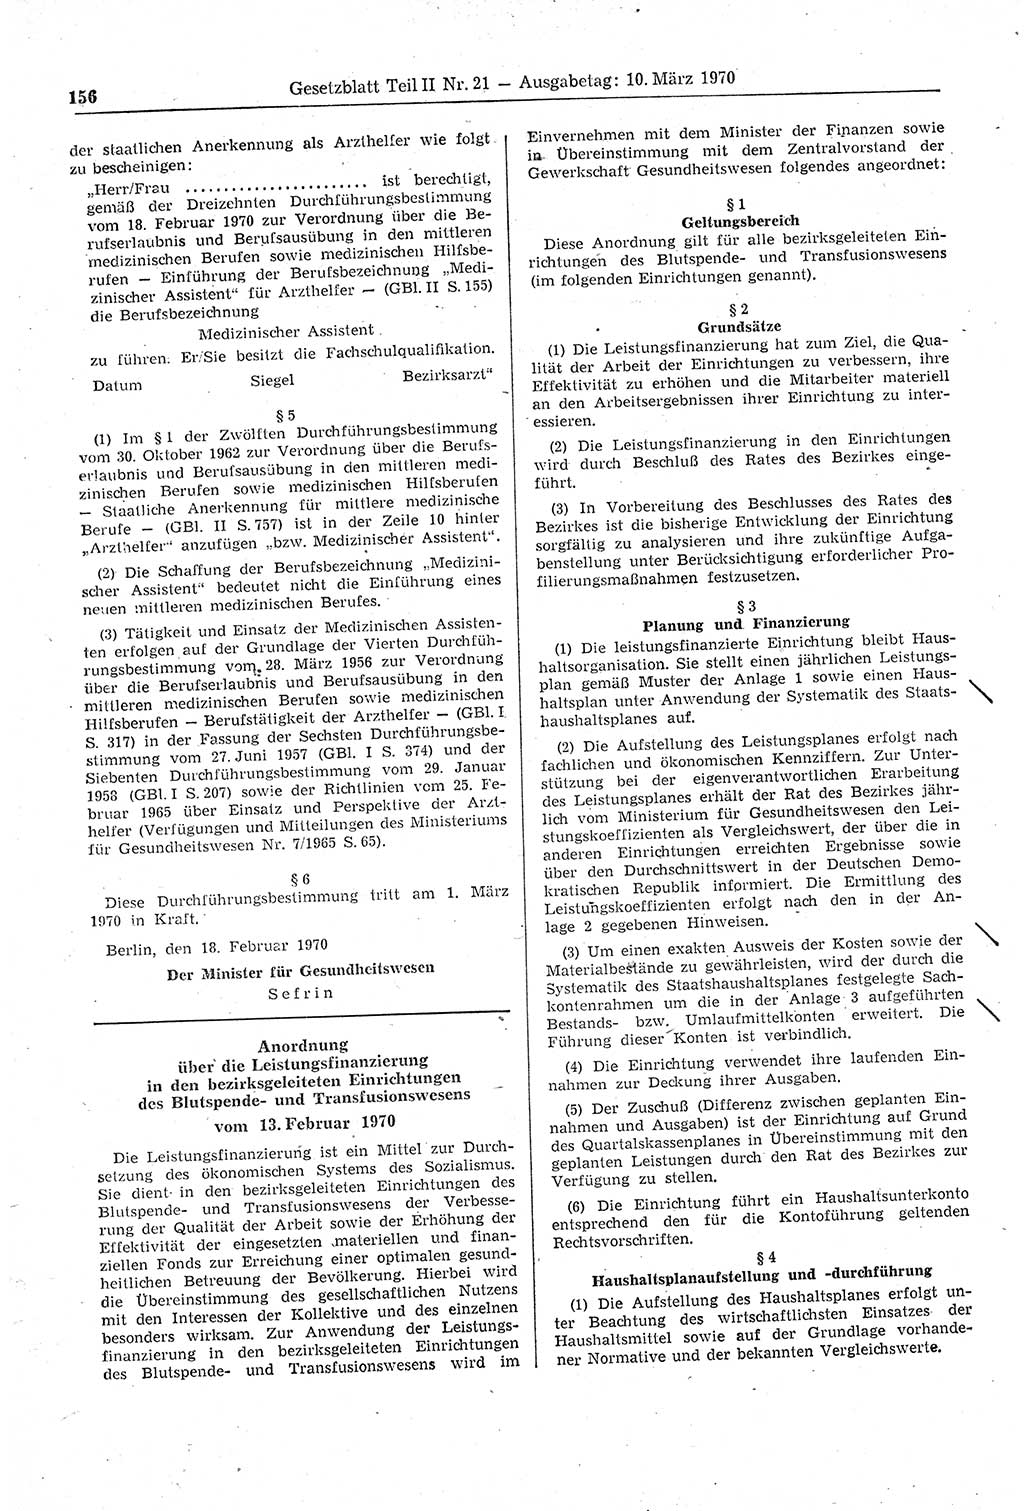 Gesetzblatt (GBl.) der Deutschen Demokratischen Republik (DDR) Teil ⅠⅠ 1970, Seite 156 (GBl. DDR ⅠⅠ 1970, S. 156)